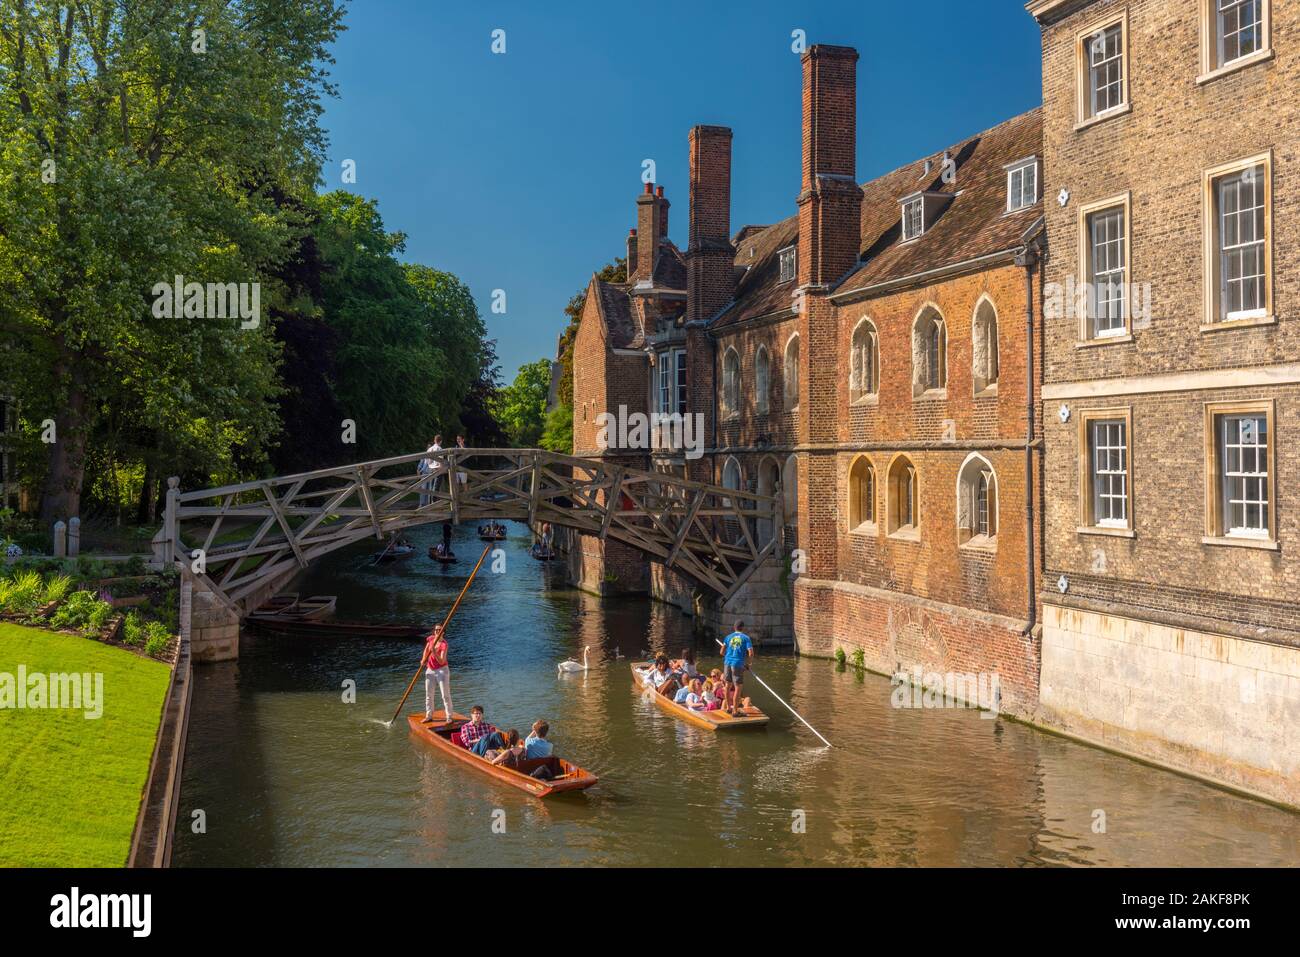 UK, England, Cambridgeshire, Cambridge, River Cam, Queens' College, Mathematical Bridge, Punting Stock Photo